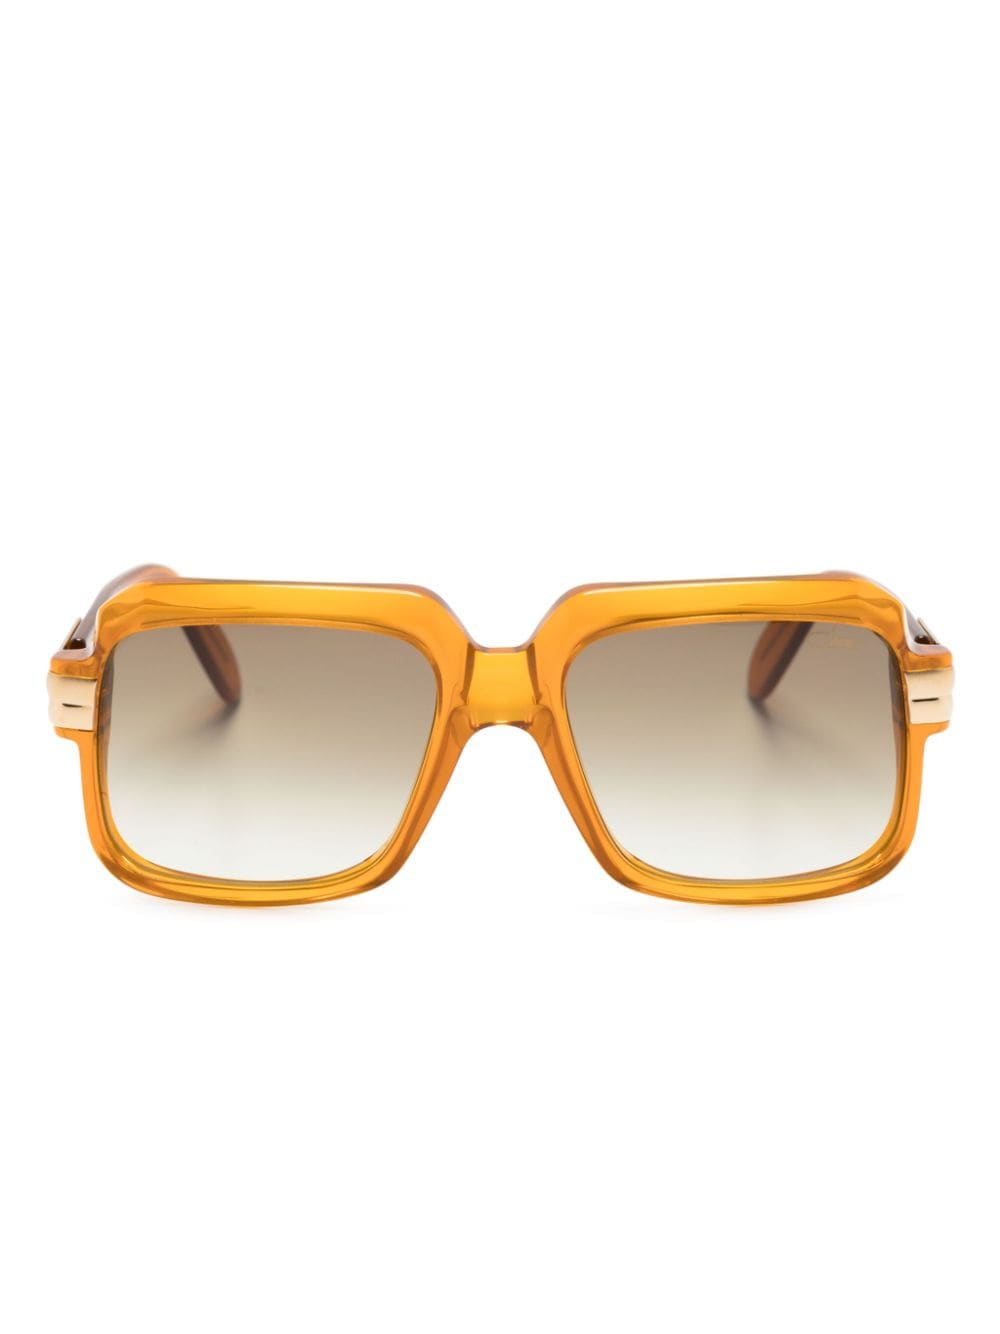 Cazal 607/3 Square-frame Sunglasses In Orange